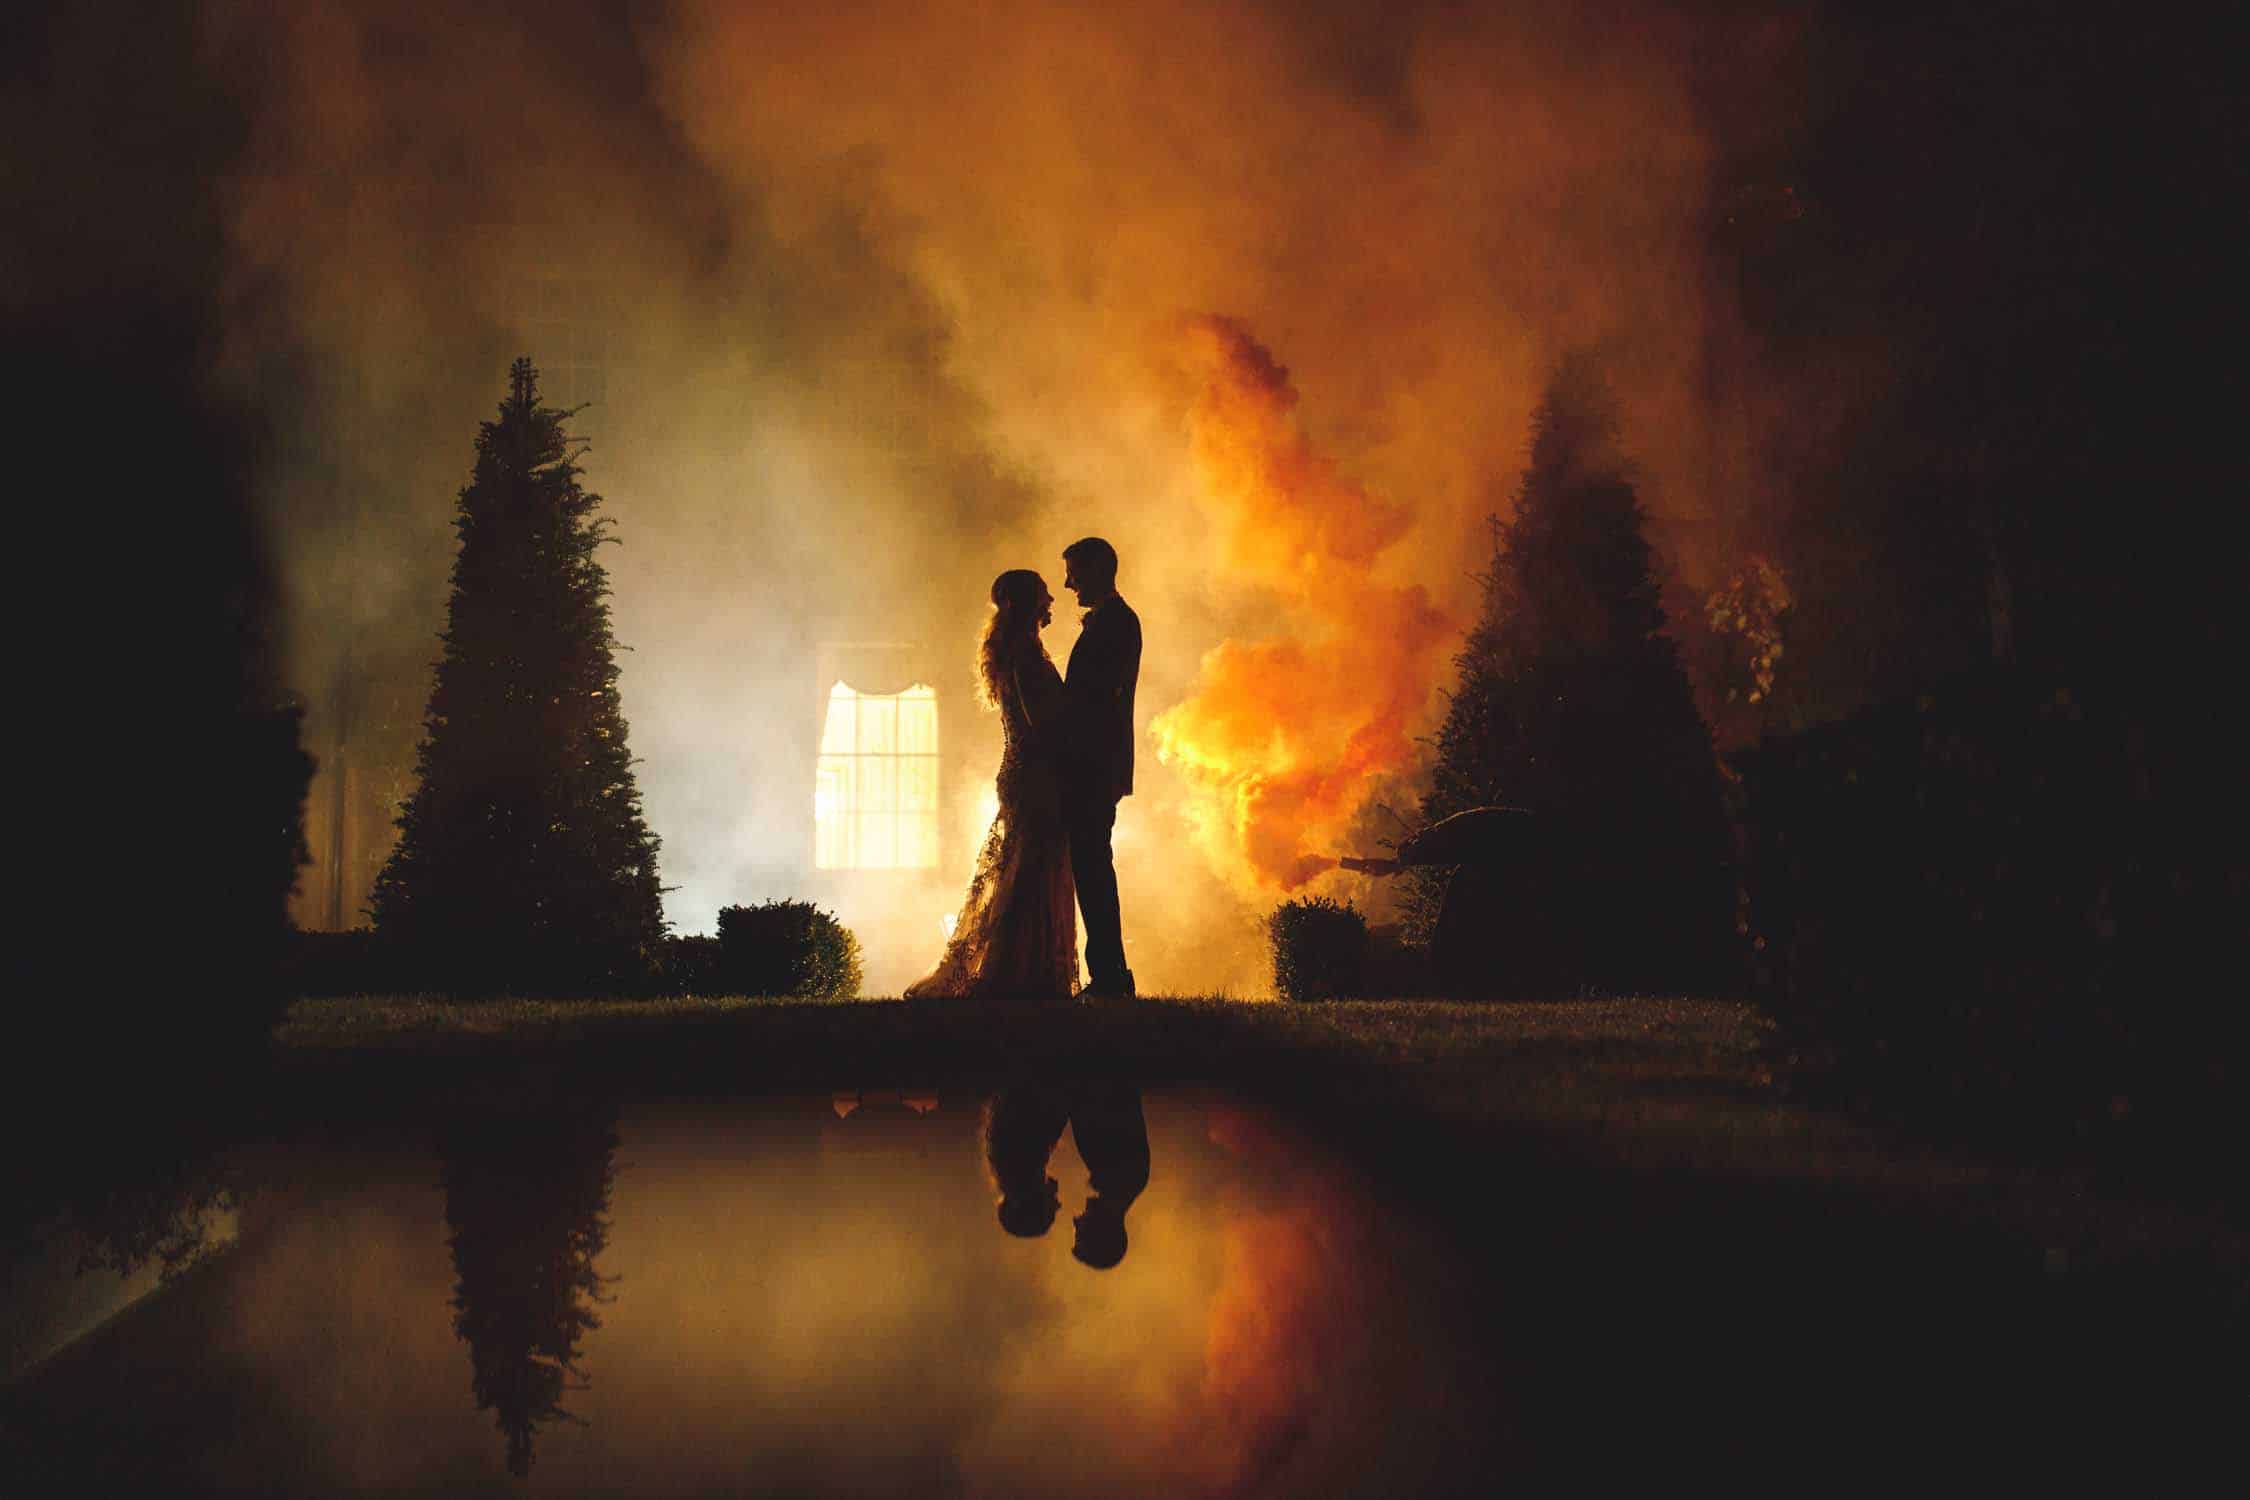 Lemore Manor Wedding Photography - Herefordshire